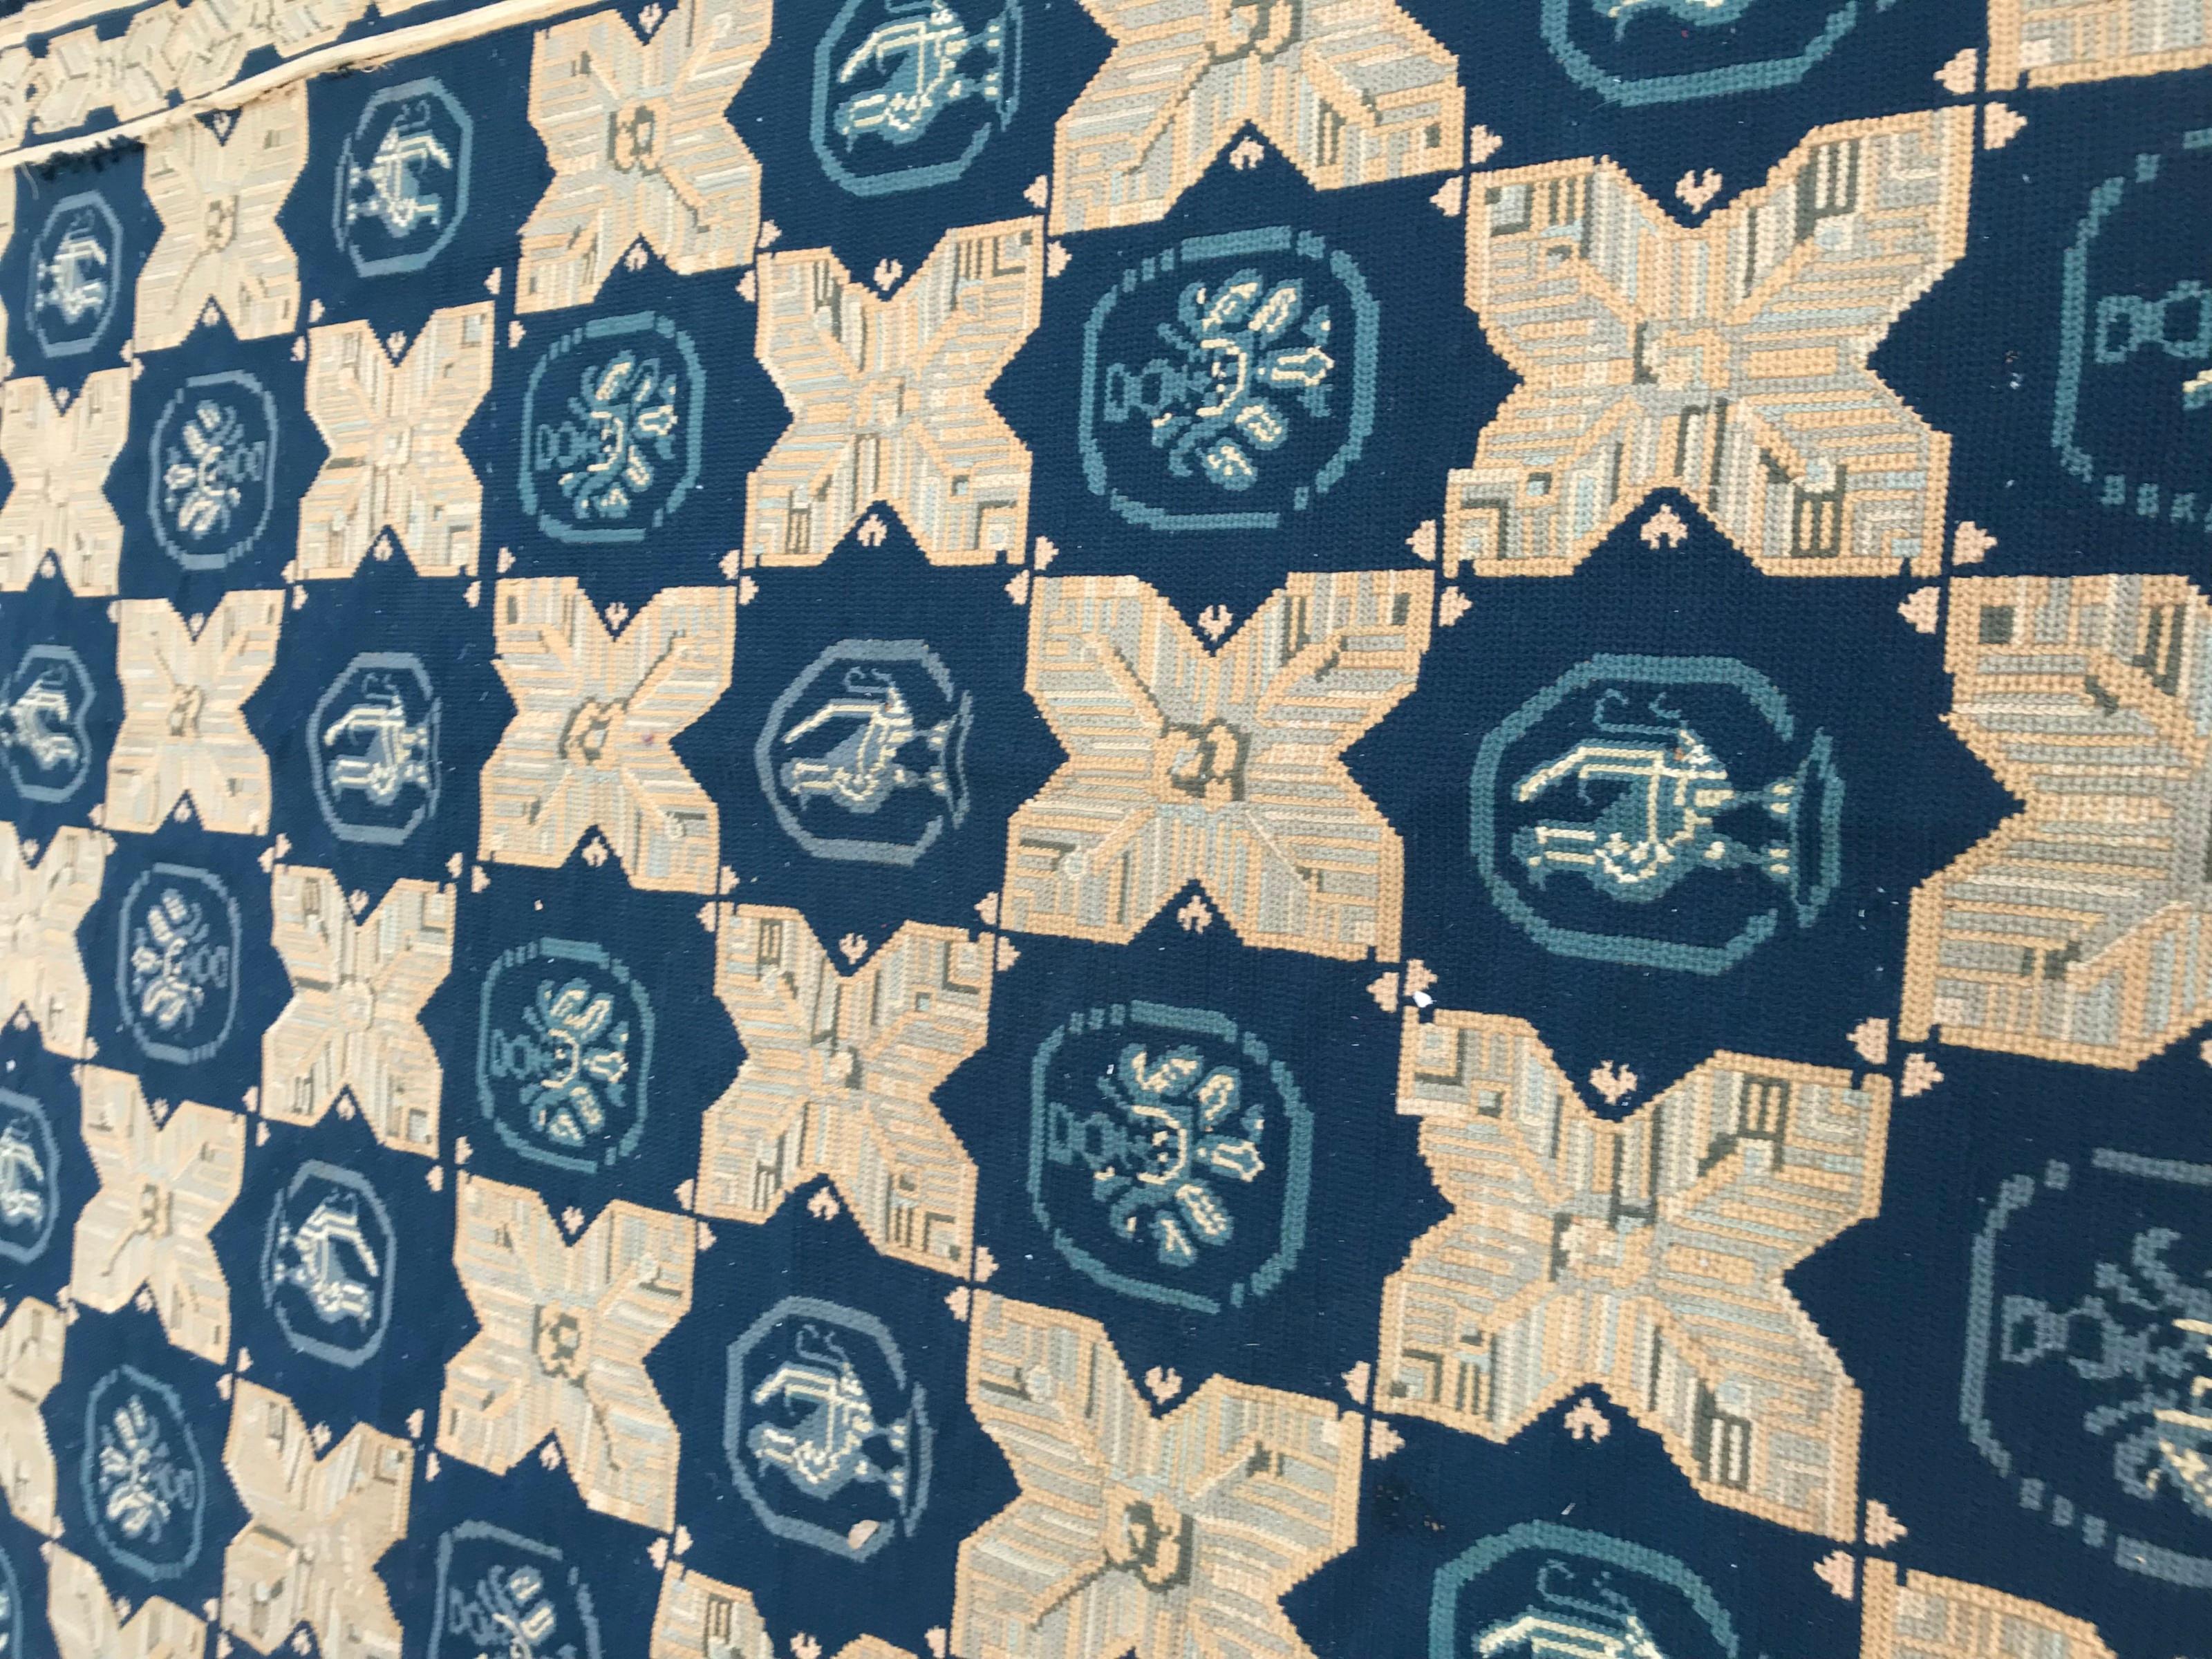 Entdecken Sie die Eleganz unseres portugiesischen Arraiolas-Teppichs mit Nadelspitze aus dem frühen 20. Jahrhundert. Dieses exquisite Stück ist mit einem fesselnden geometrischen viktorianischen Muster in beruhigenden Blau- und Beigetönen verziert